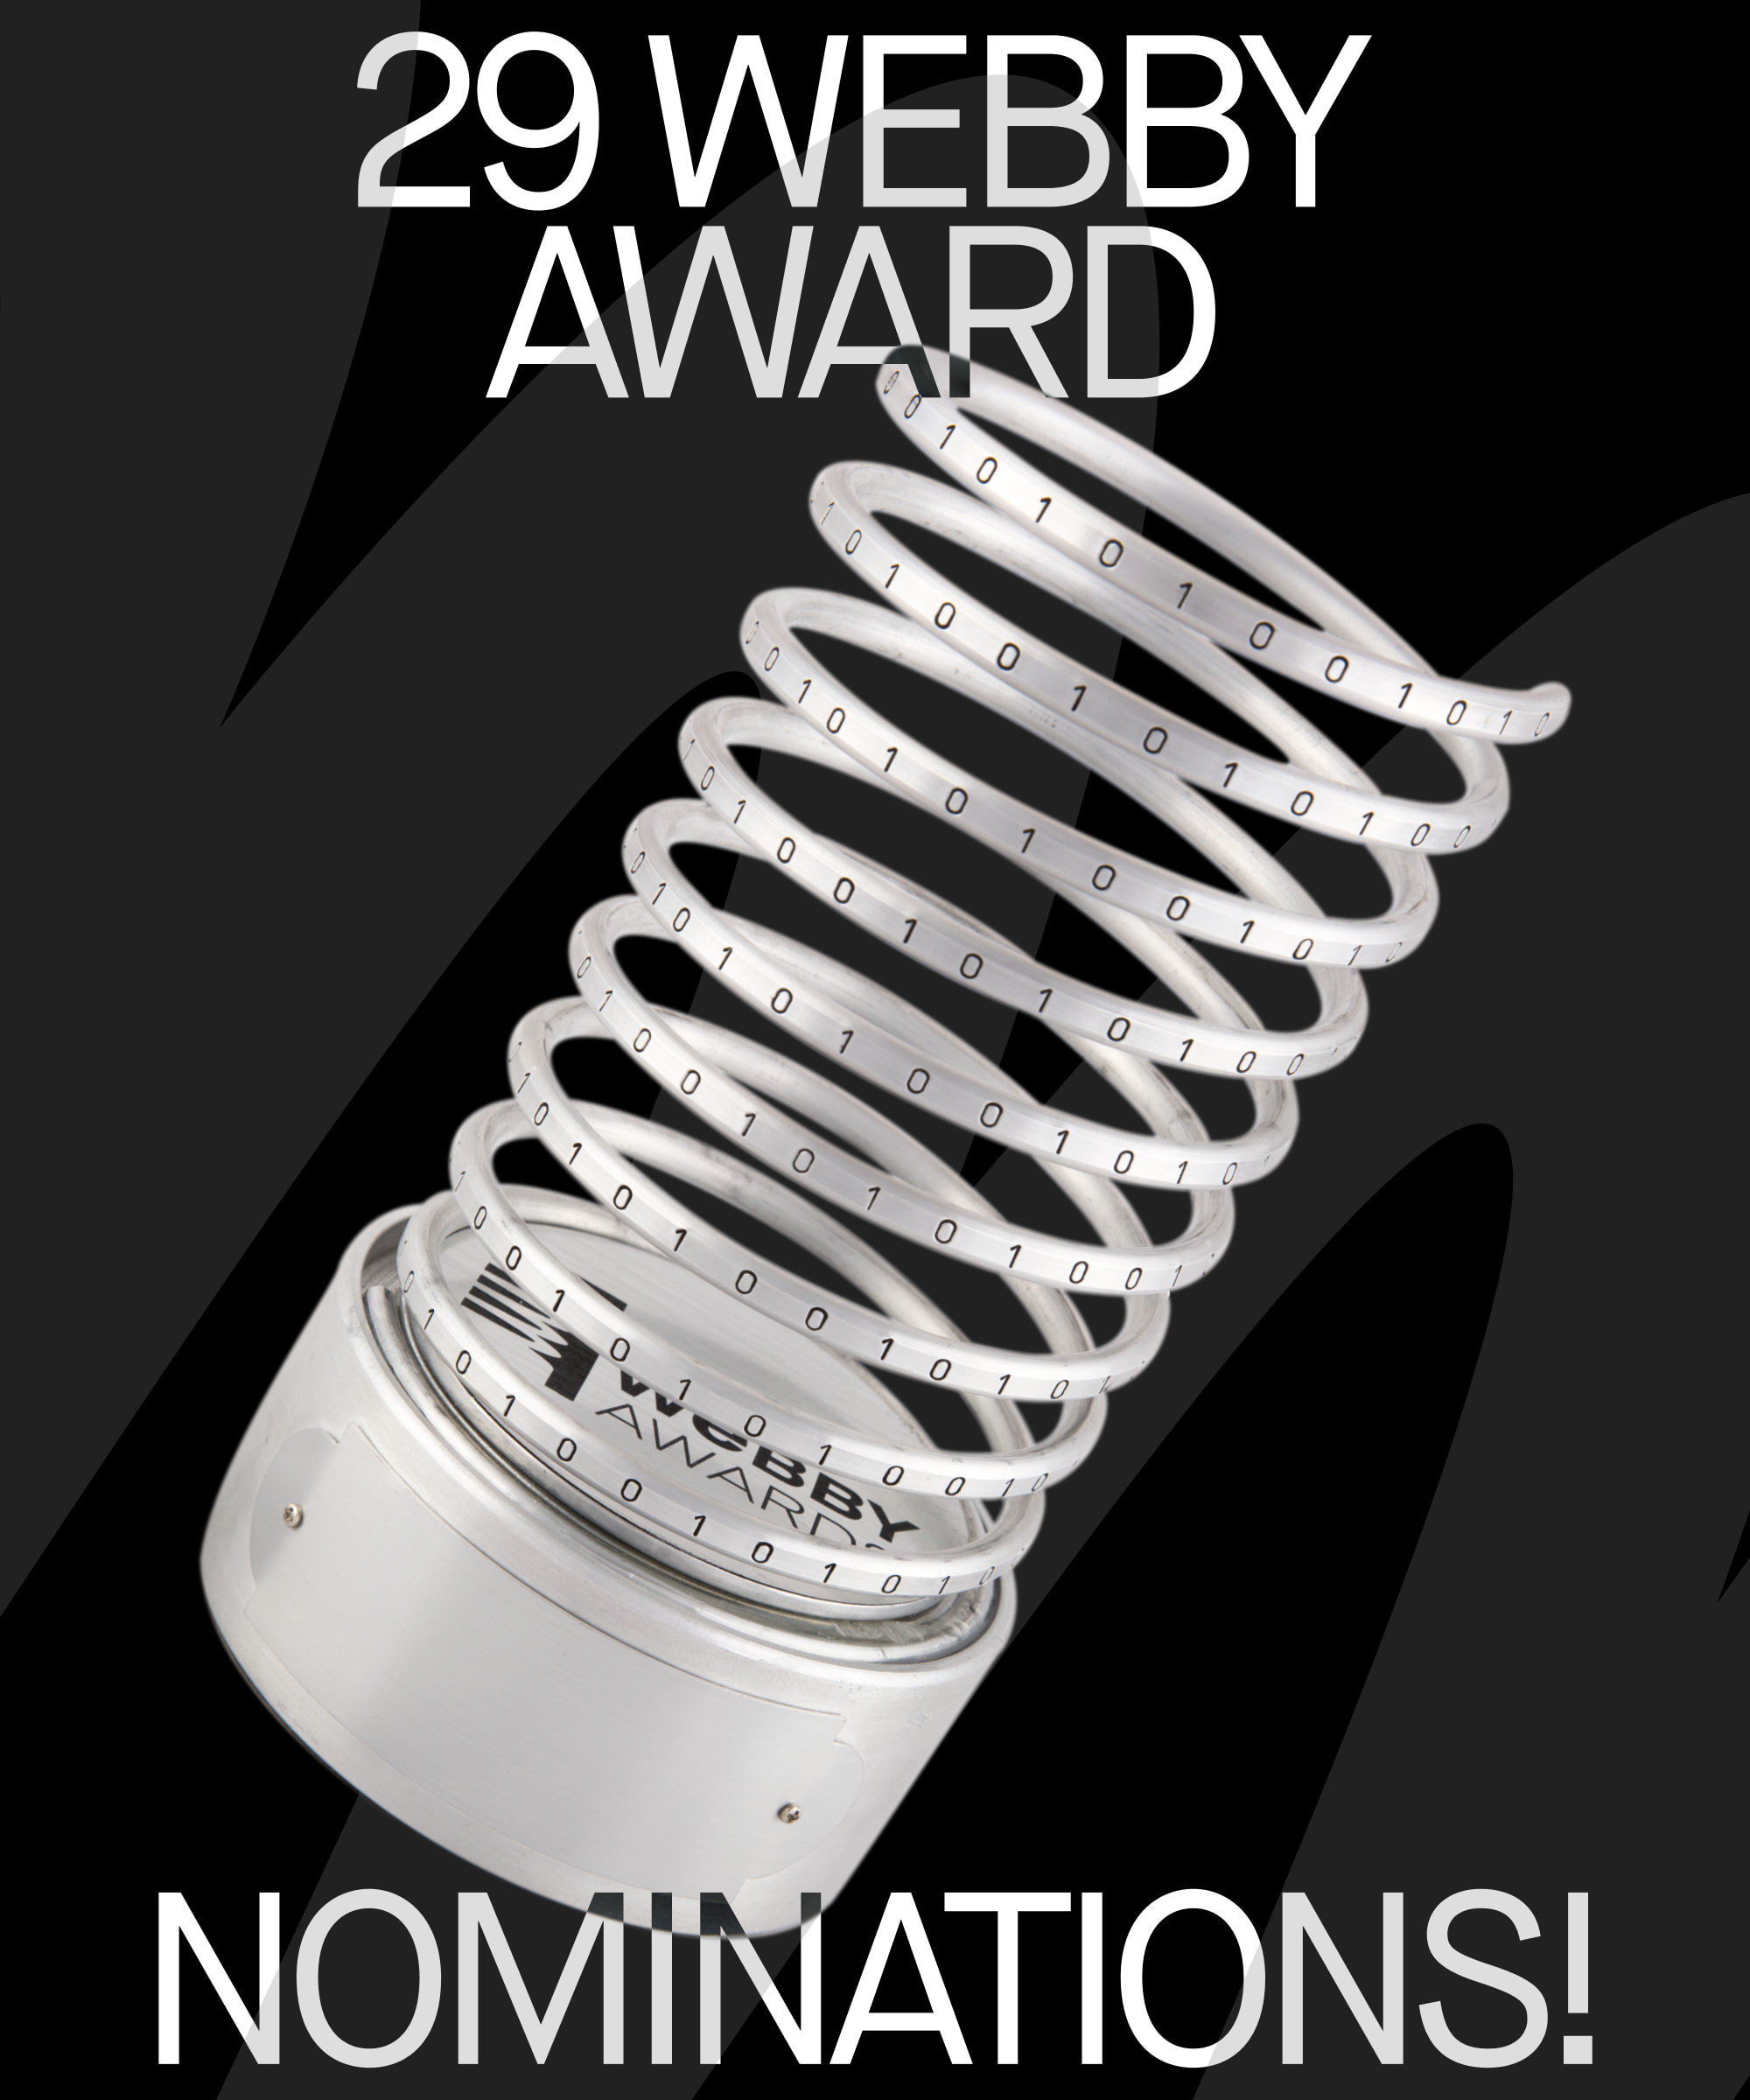 AI en Impact werk van DEPT® behoren tot de 29 Webby Award nominaties